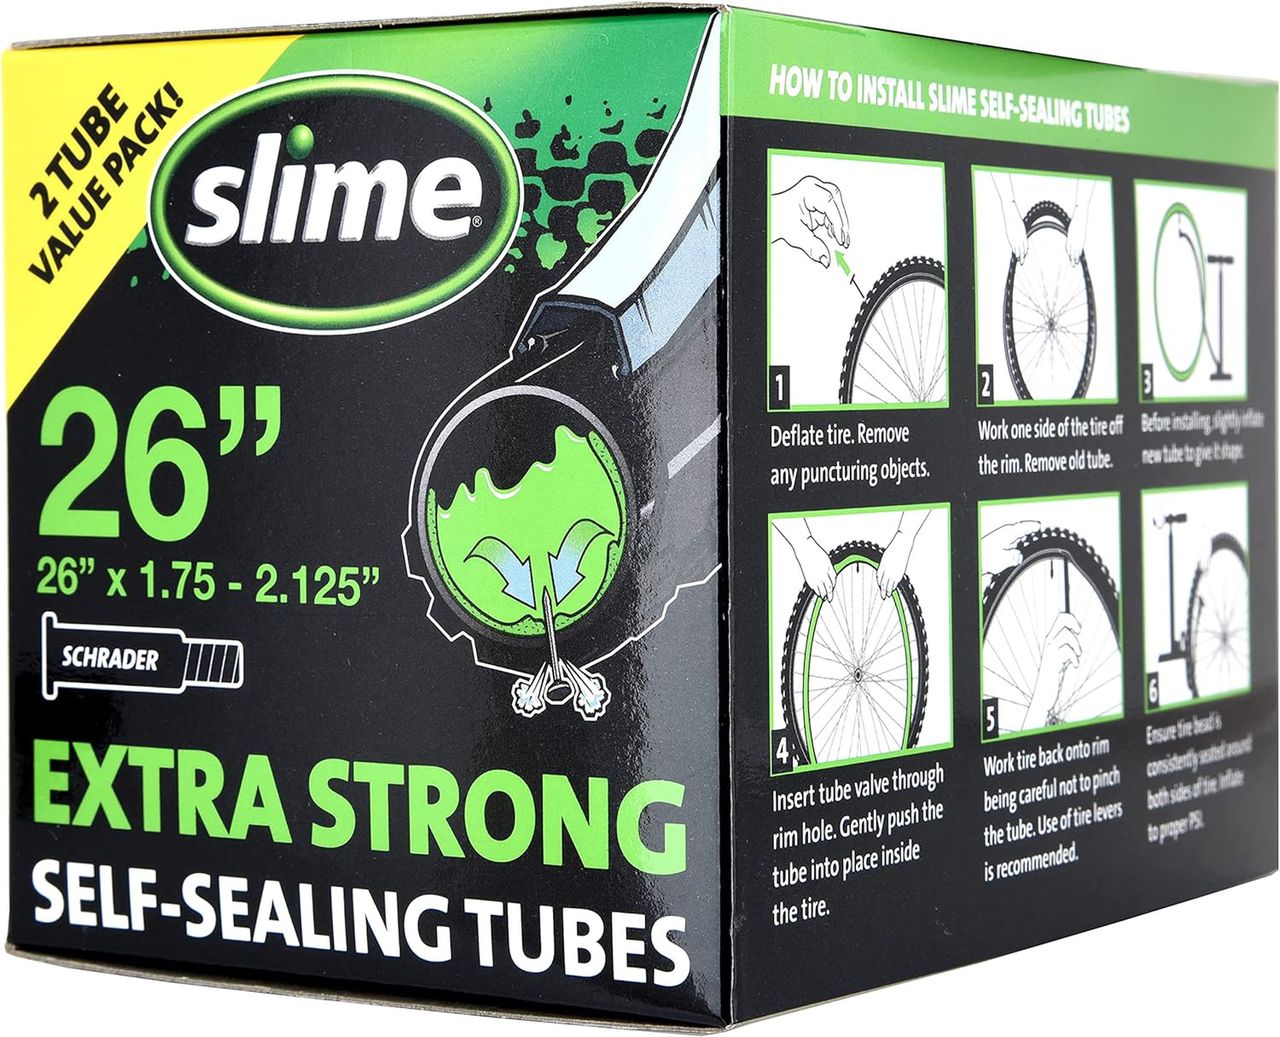 Slime bicycle inner tube